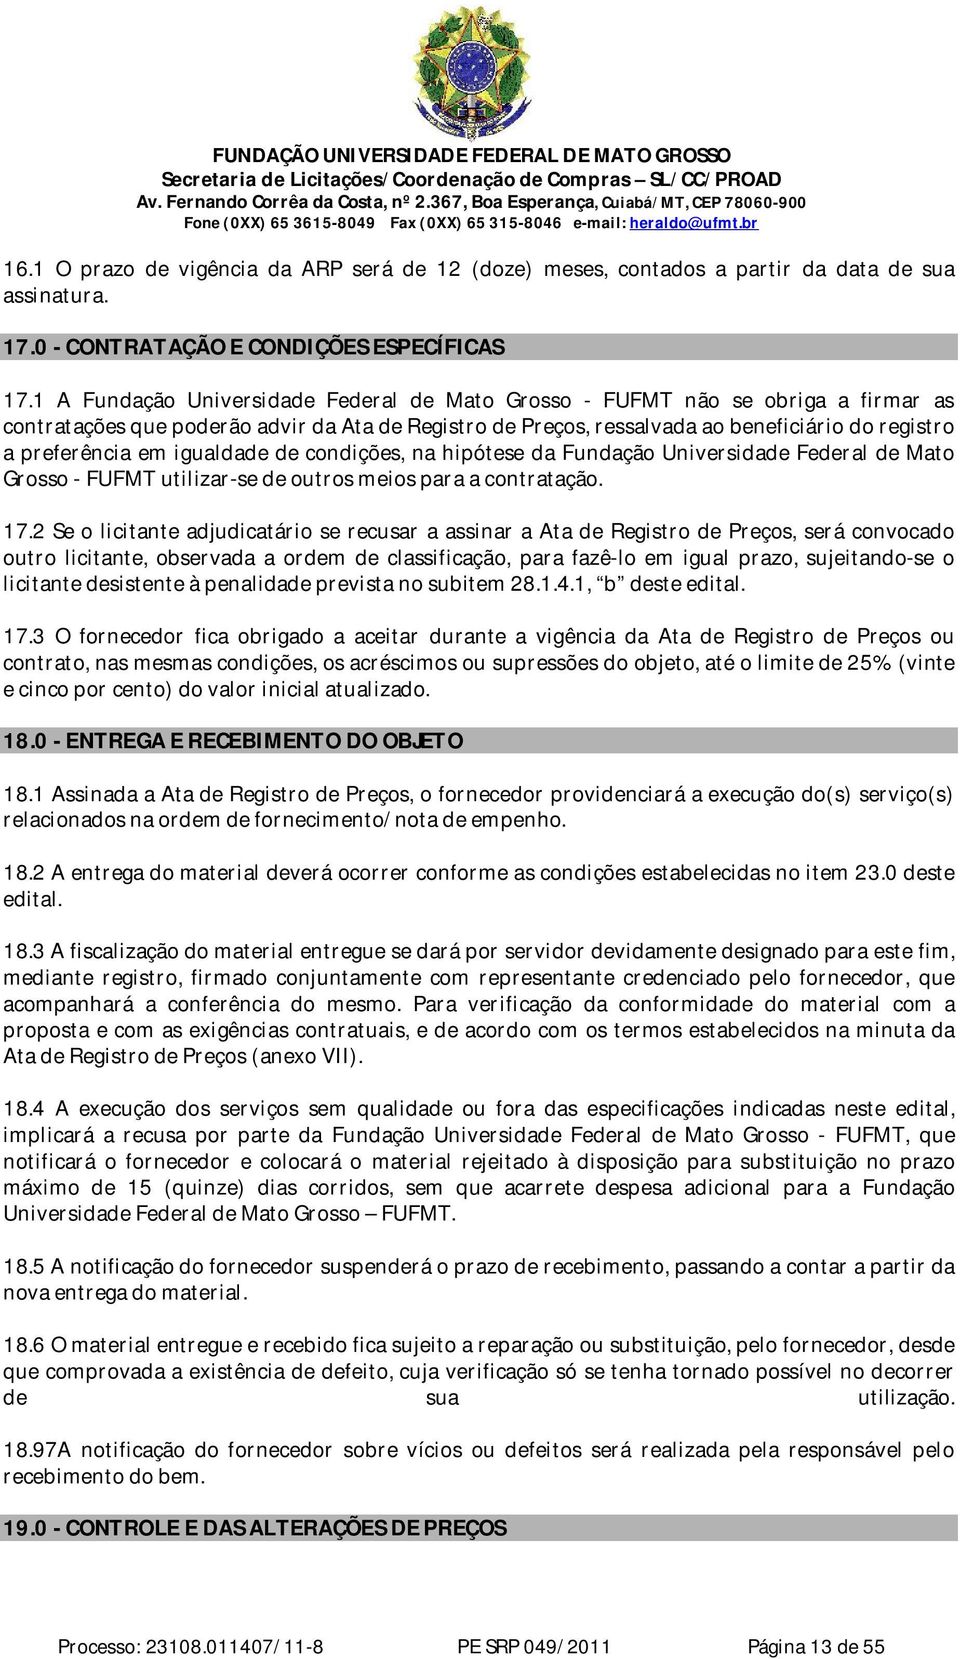 igualdade de condições, na hipótese da Fundação Universidade Federal de Mato Grosso - FUFMT utilizar-se de outros meios para a contratação. 17.